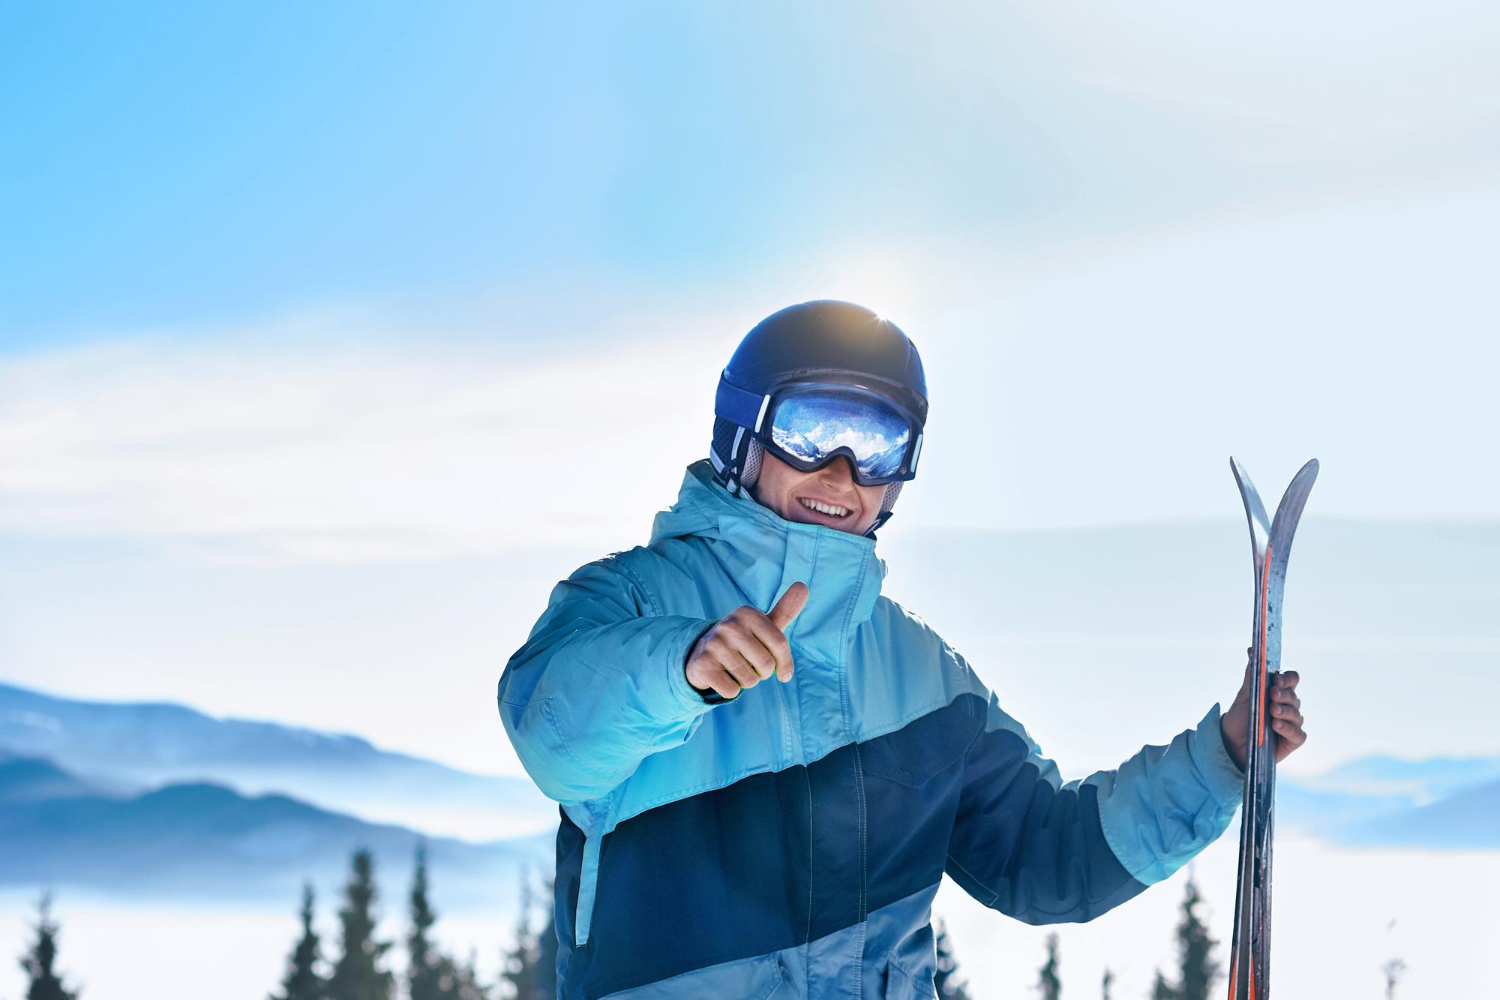 Een man met een skibril staat in de sneeuw. Hij heeft in zijn ene hand twee ski's vast en met zijn andere hand steekt hij zijn skiduim op.